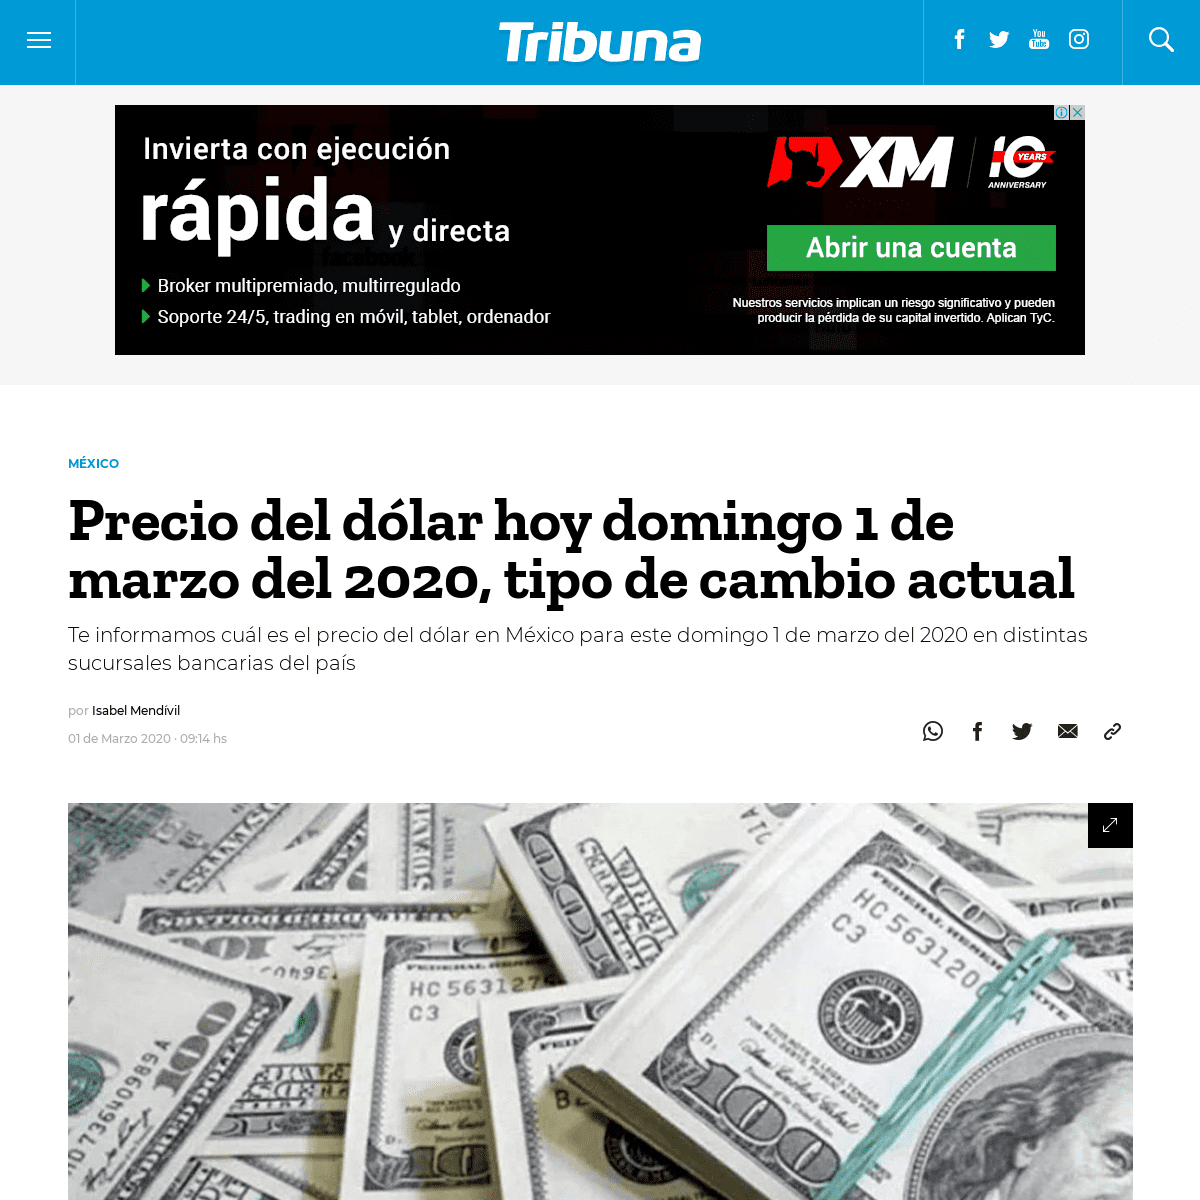 A complete backup of www.tribuna.com.mx/mexico/Precio-del-dolar-hoy-domingo-1-de-marzo-del-2020-tipo-de-cambio-actual-20200301-0